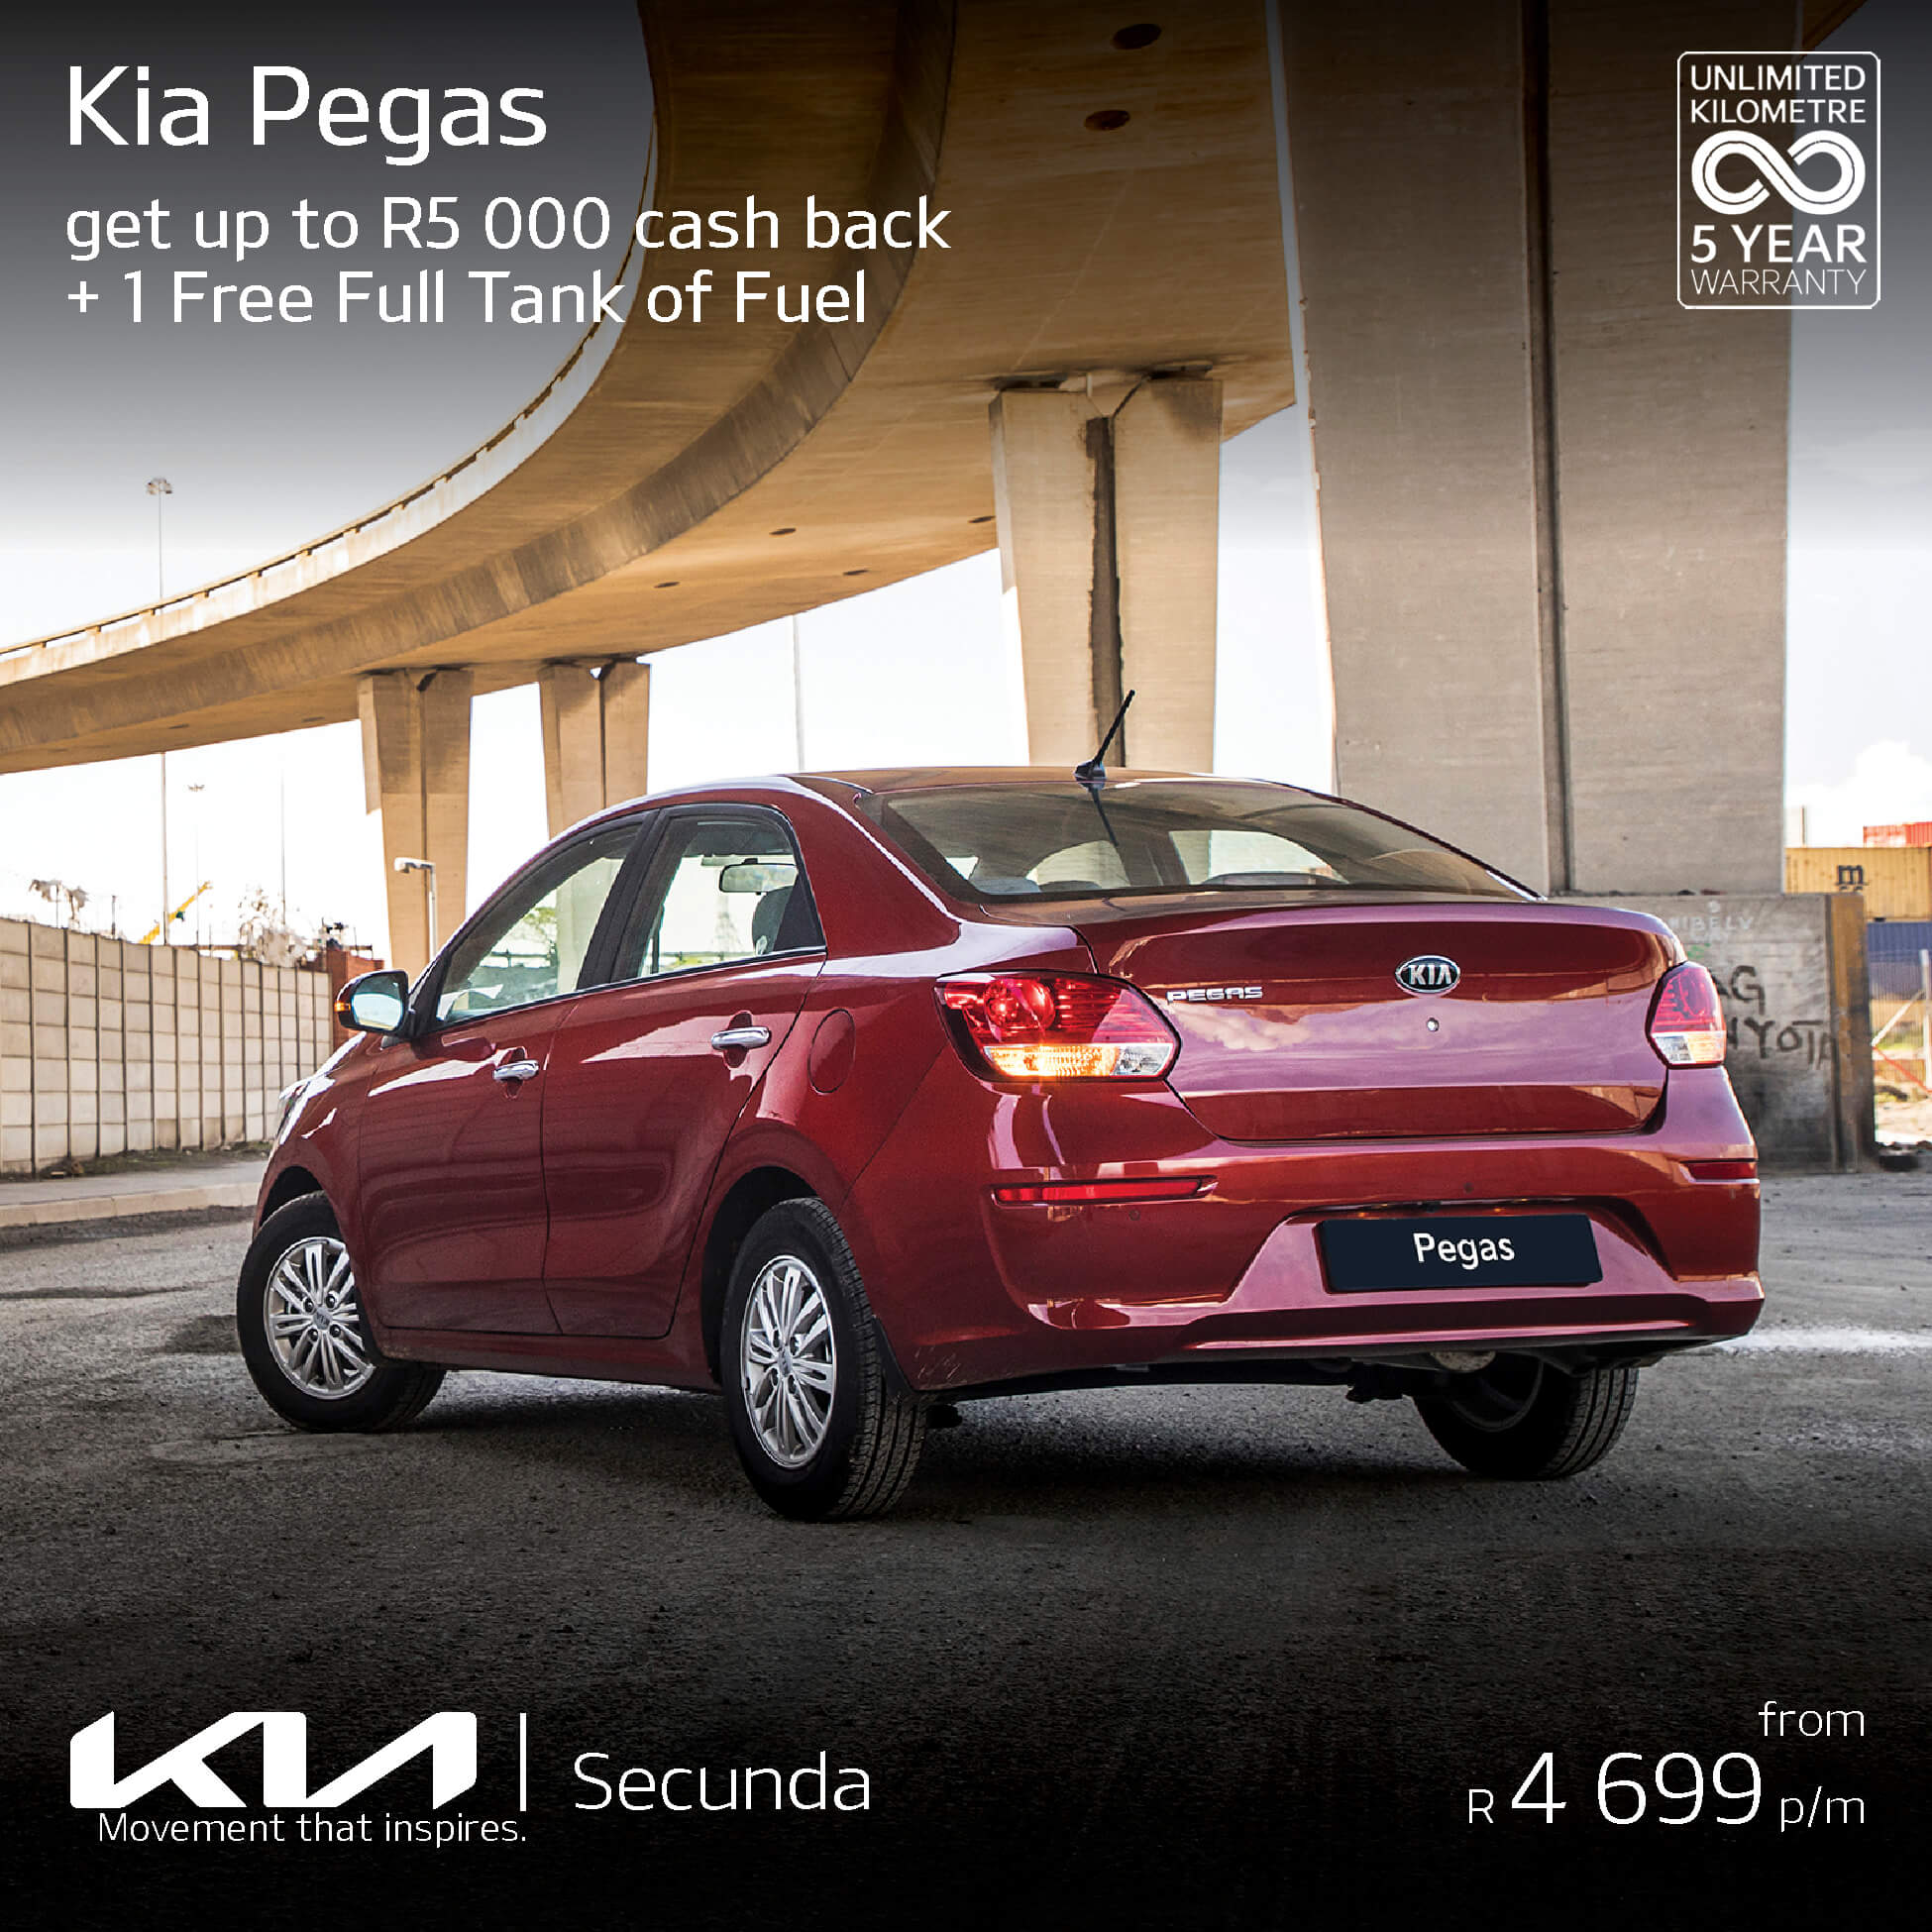 Kia Pegas image from Eastvaal Motors